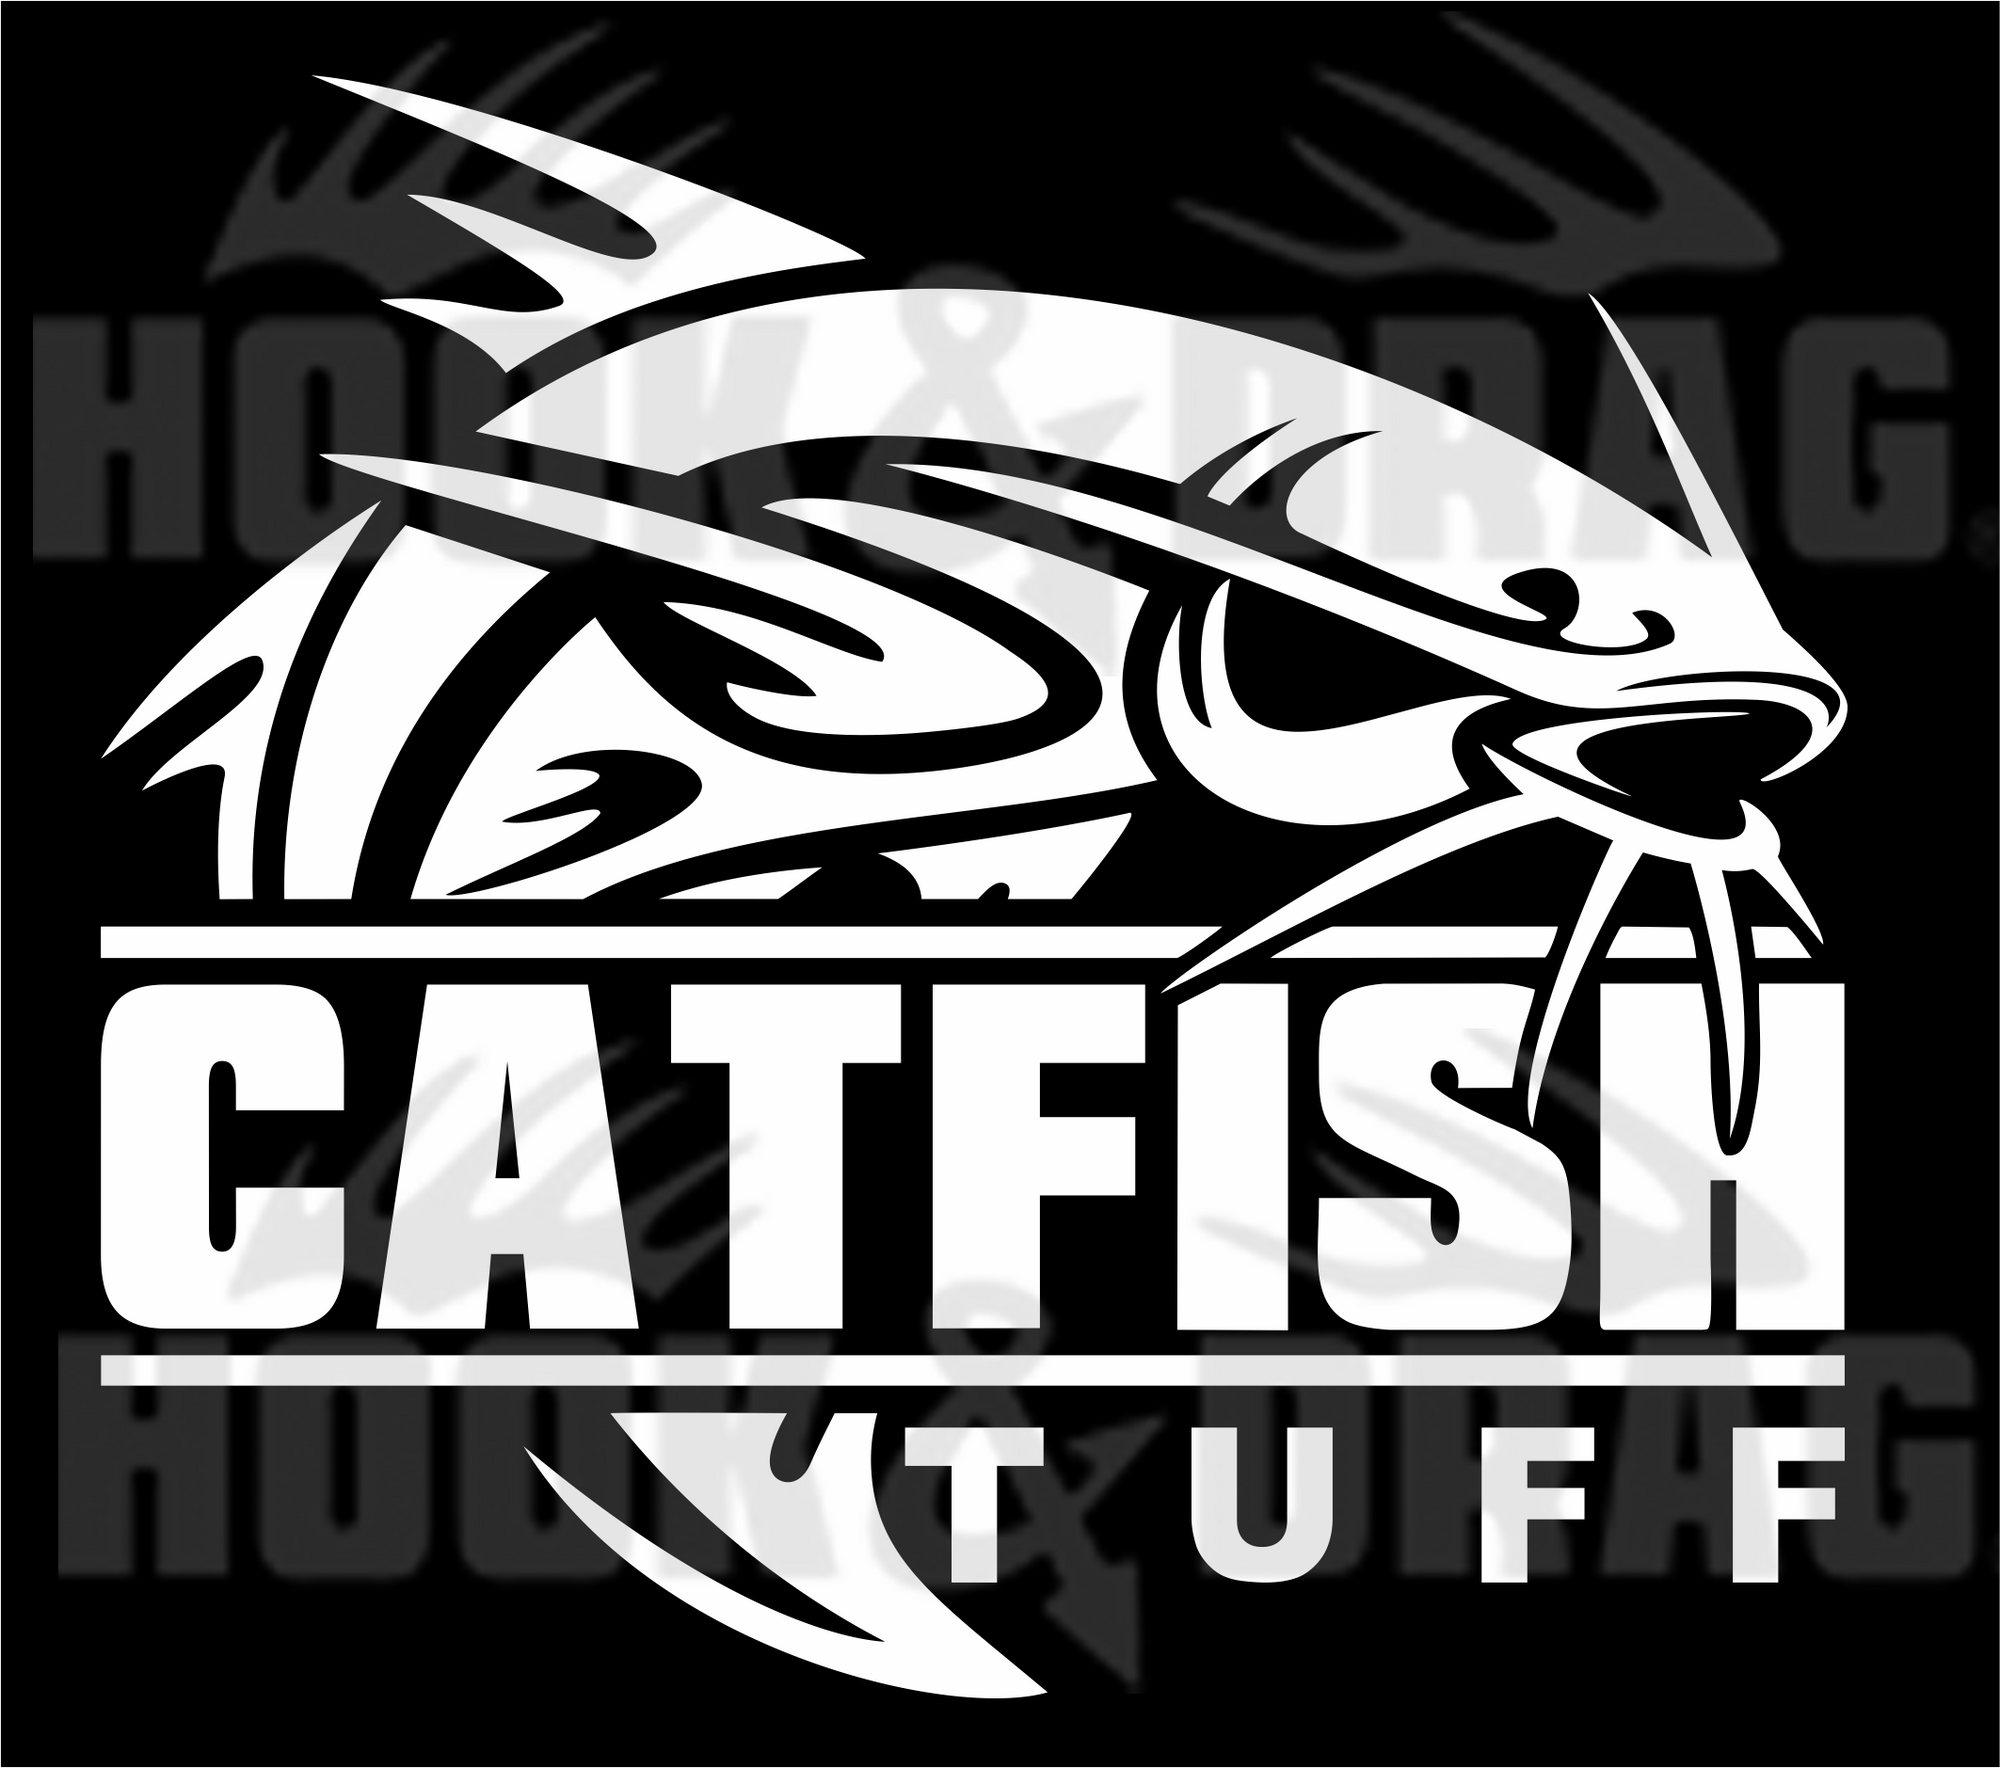 CatFish Tuff 7 x 6.25 Decal White